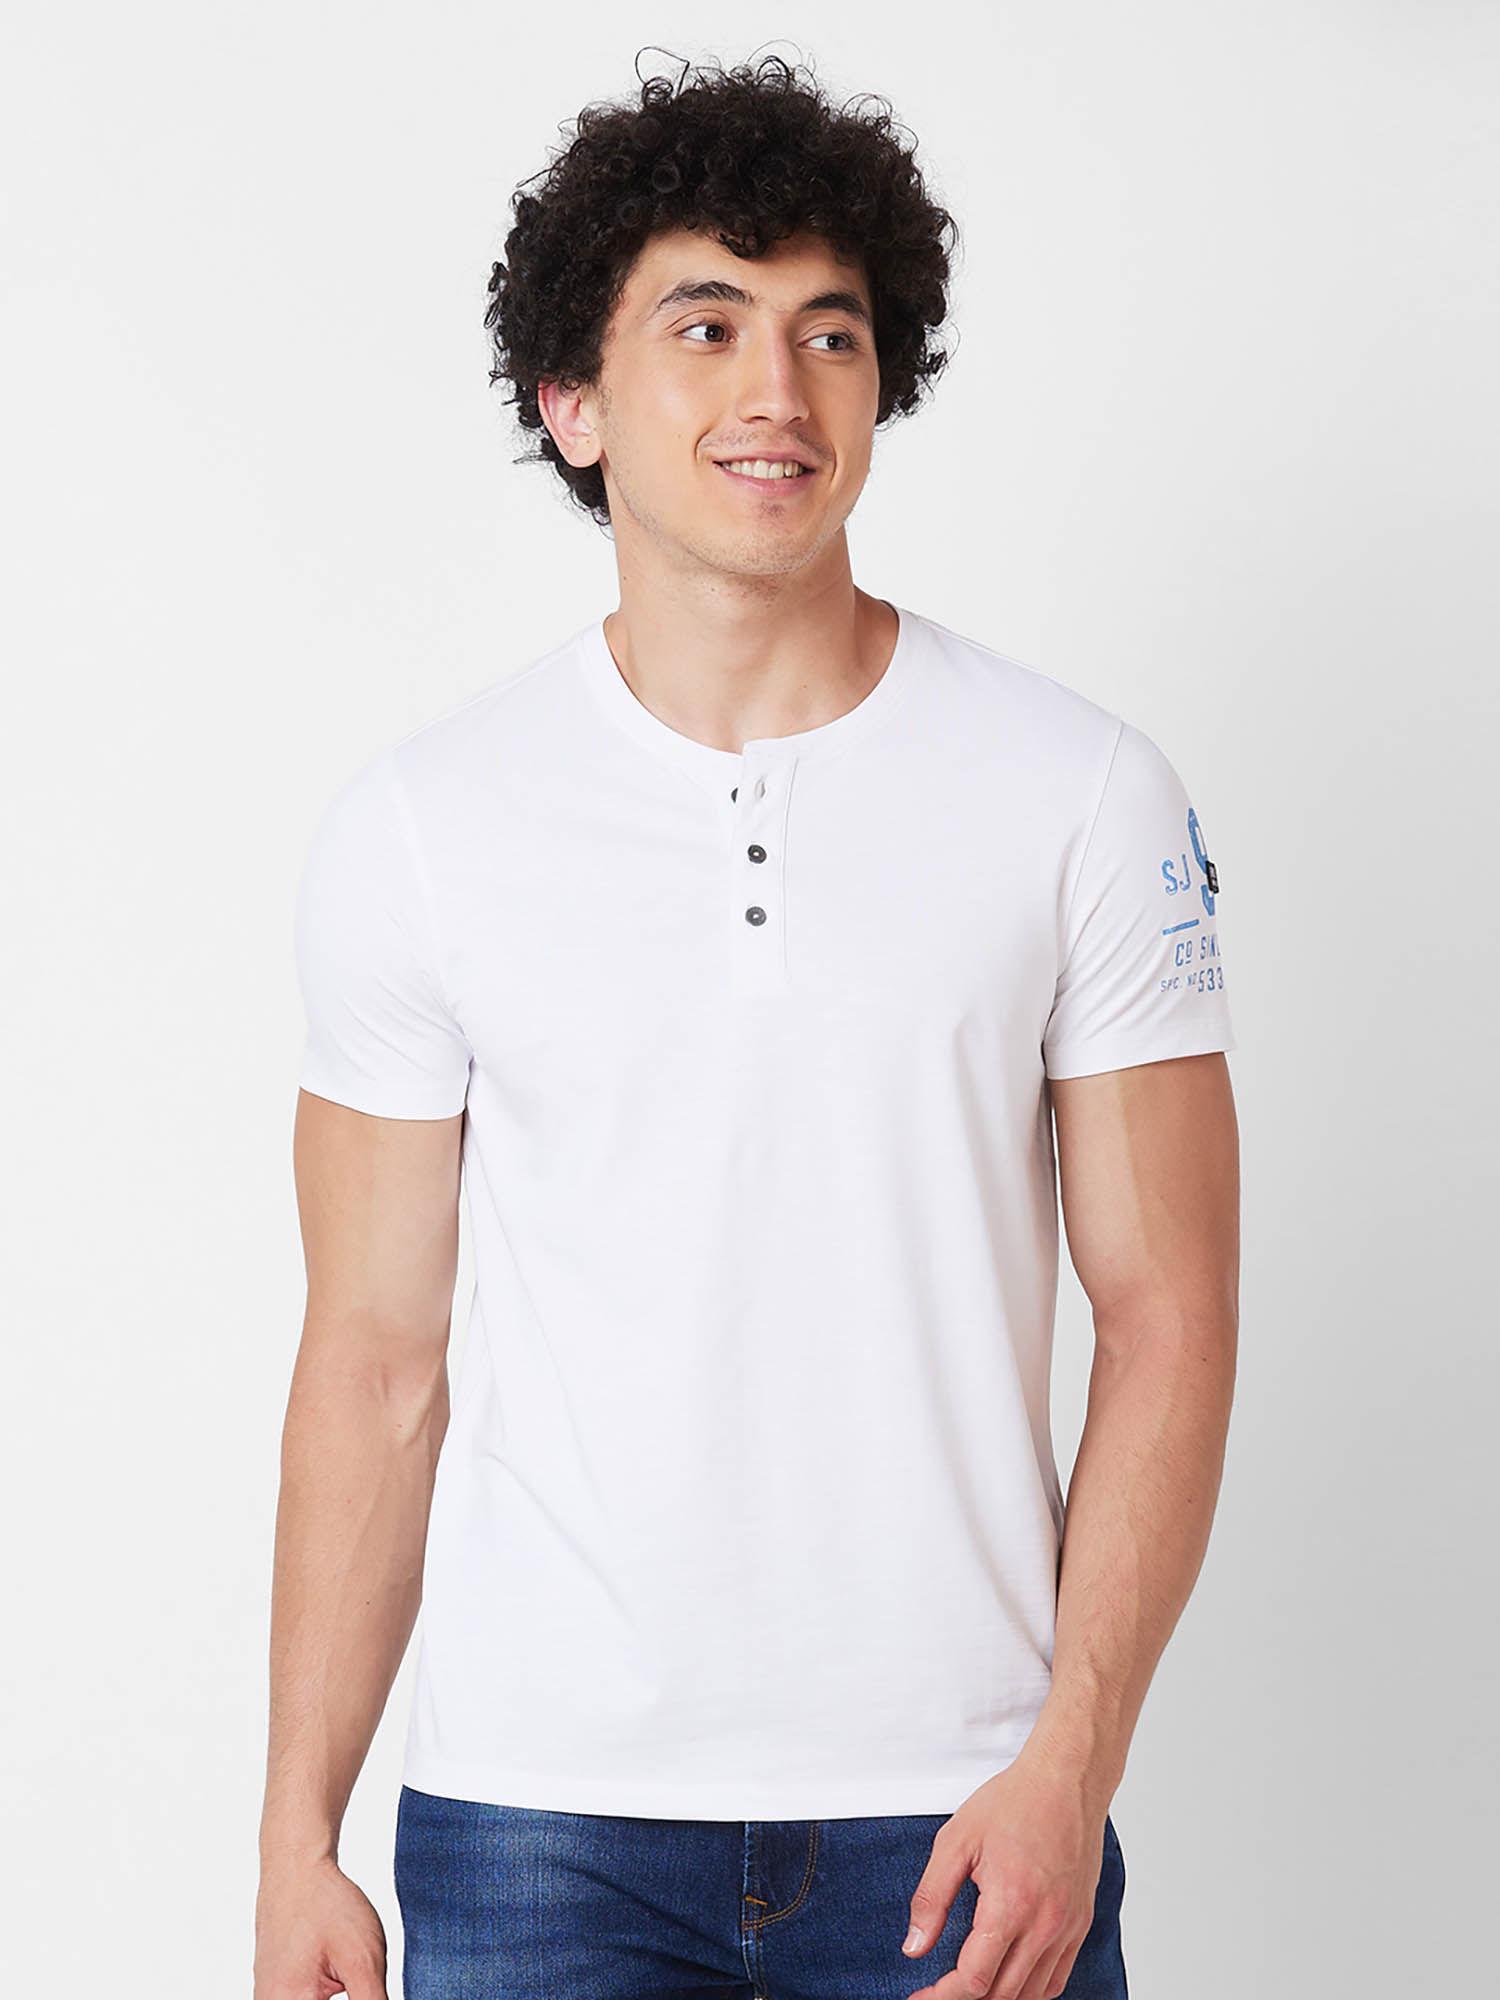 henley neck half sleeves white t-shirt for men